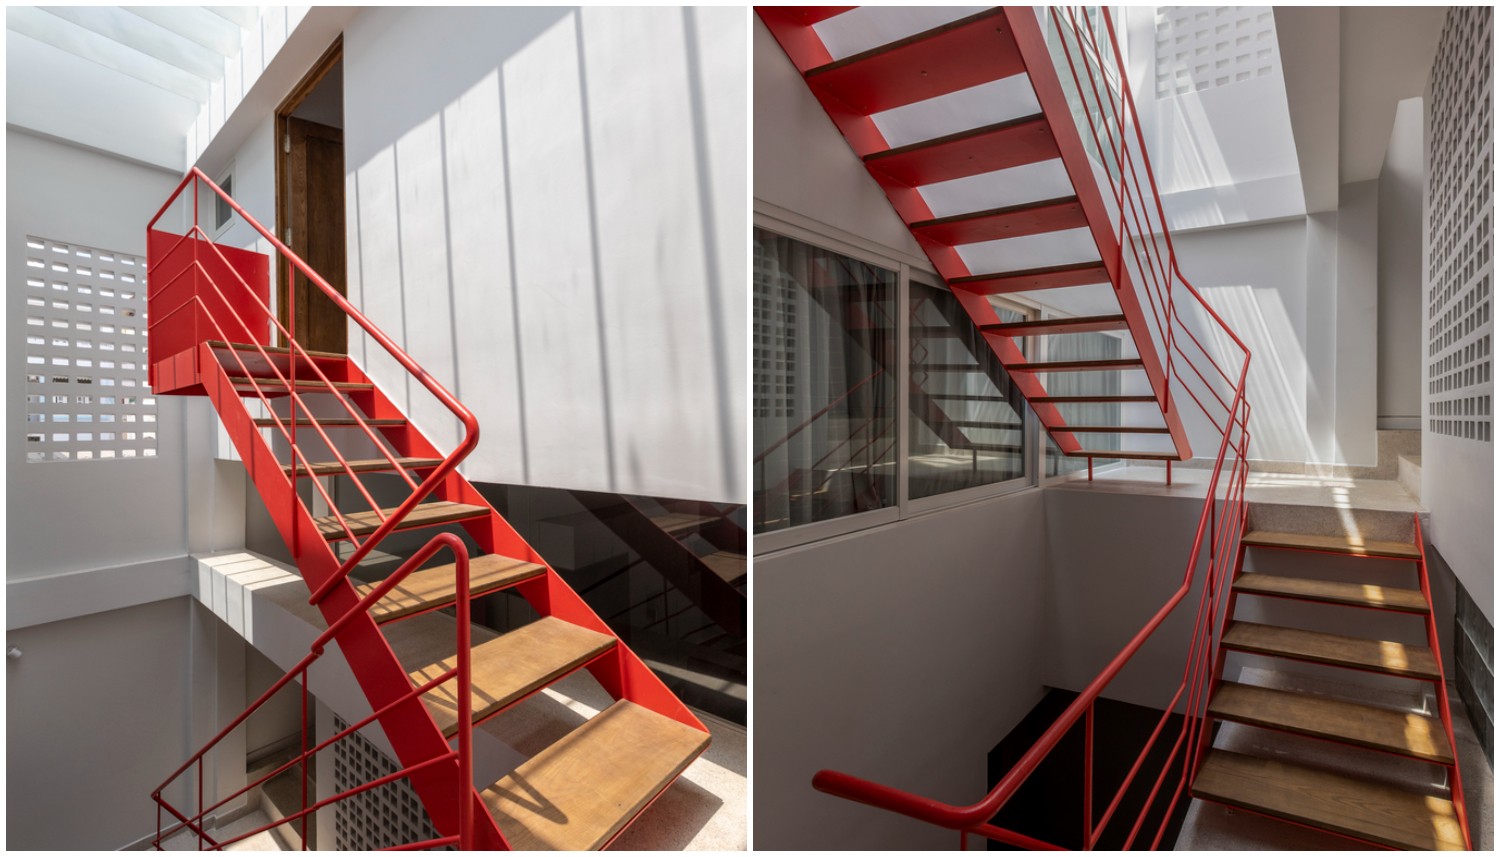 Cầu thang khung kim loại sơn màu đỏ cam ấm áp, như một điểm nhấn kiến trúc cho khu vực thông tầng của nhà phố Sài Gòn.